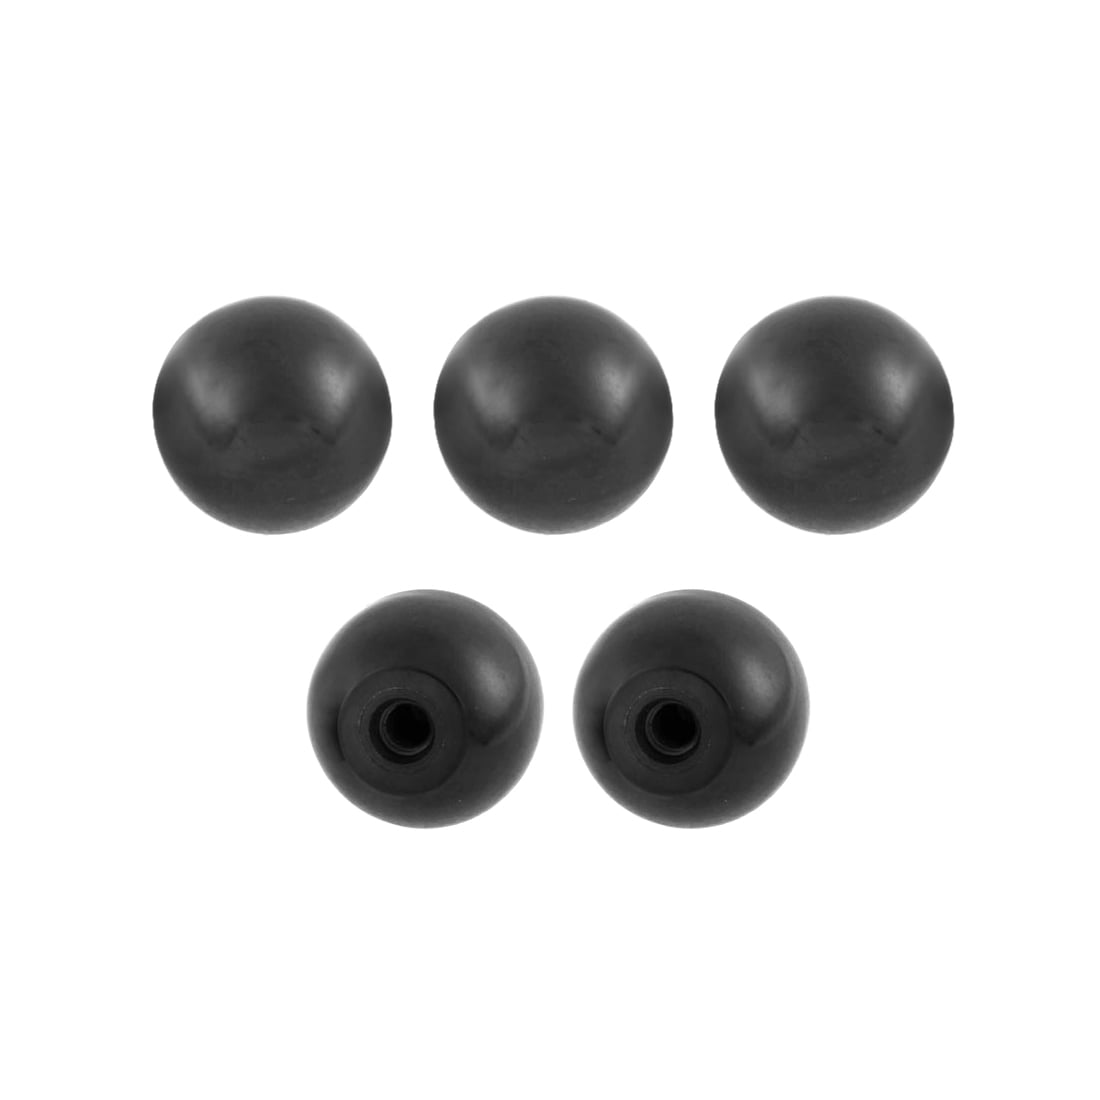 10 x Ball Knob m8 ø40mm Black-Steel Threaded Ball Head Lever Knob Gear Knob 